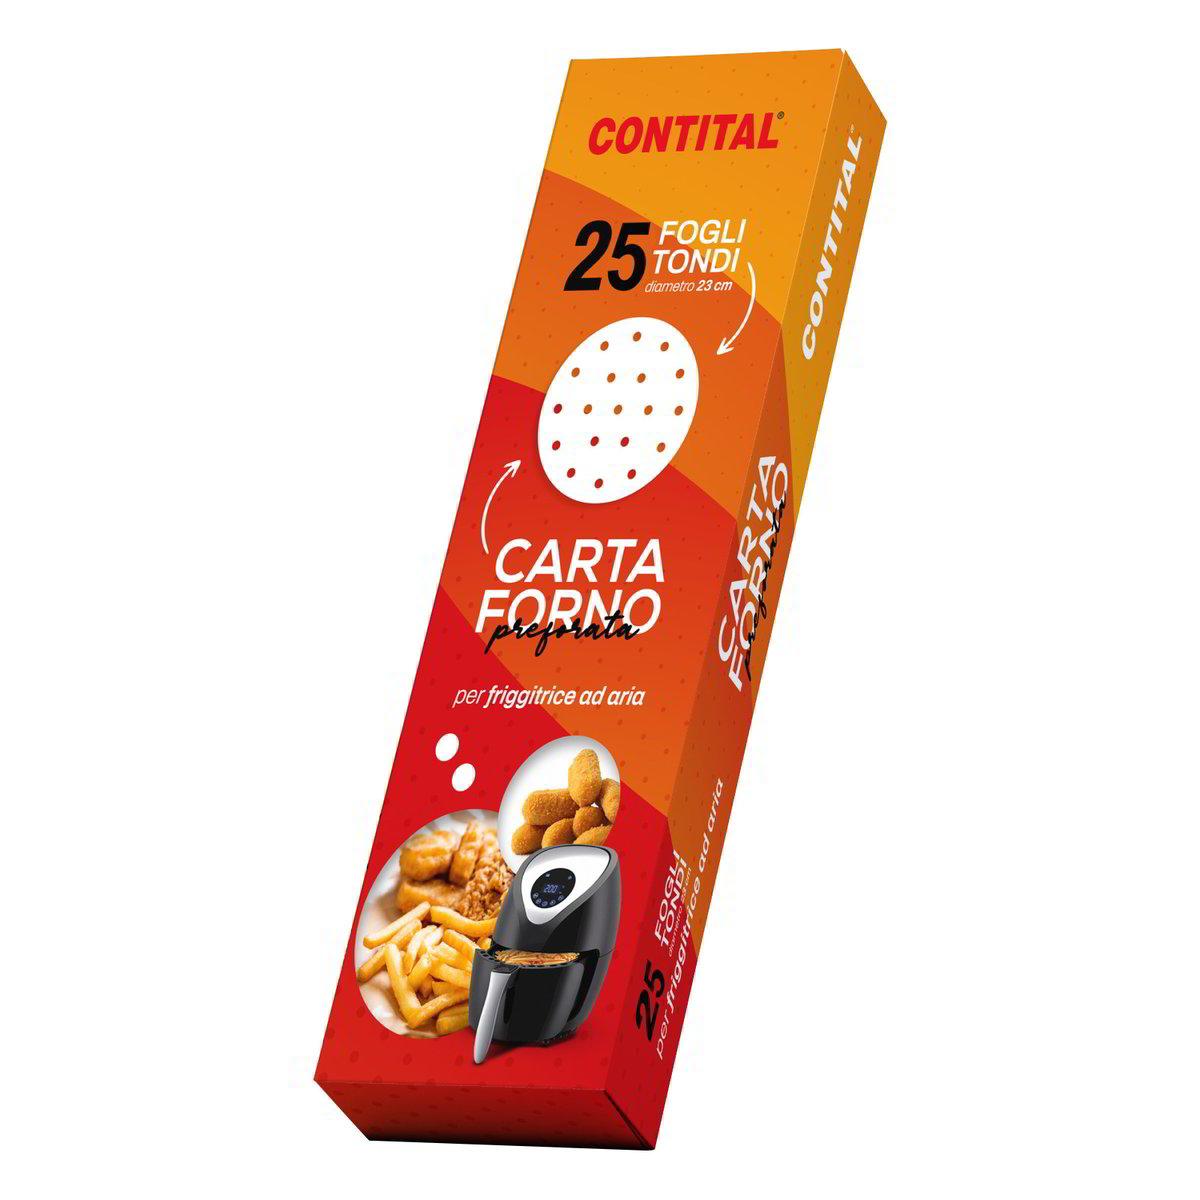 CARF2276CO-CARTA FORNO PREFORATA PER FRIGGITRICE AD ARIA